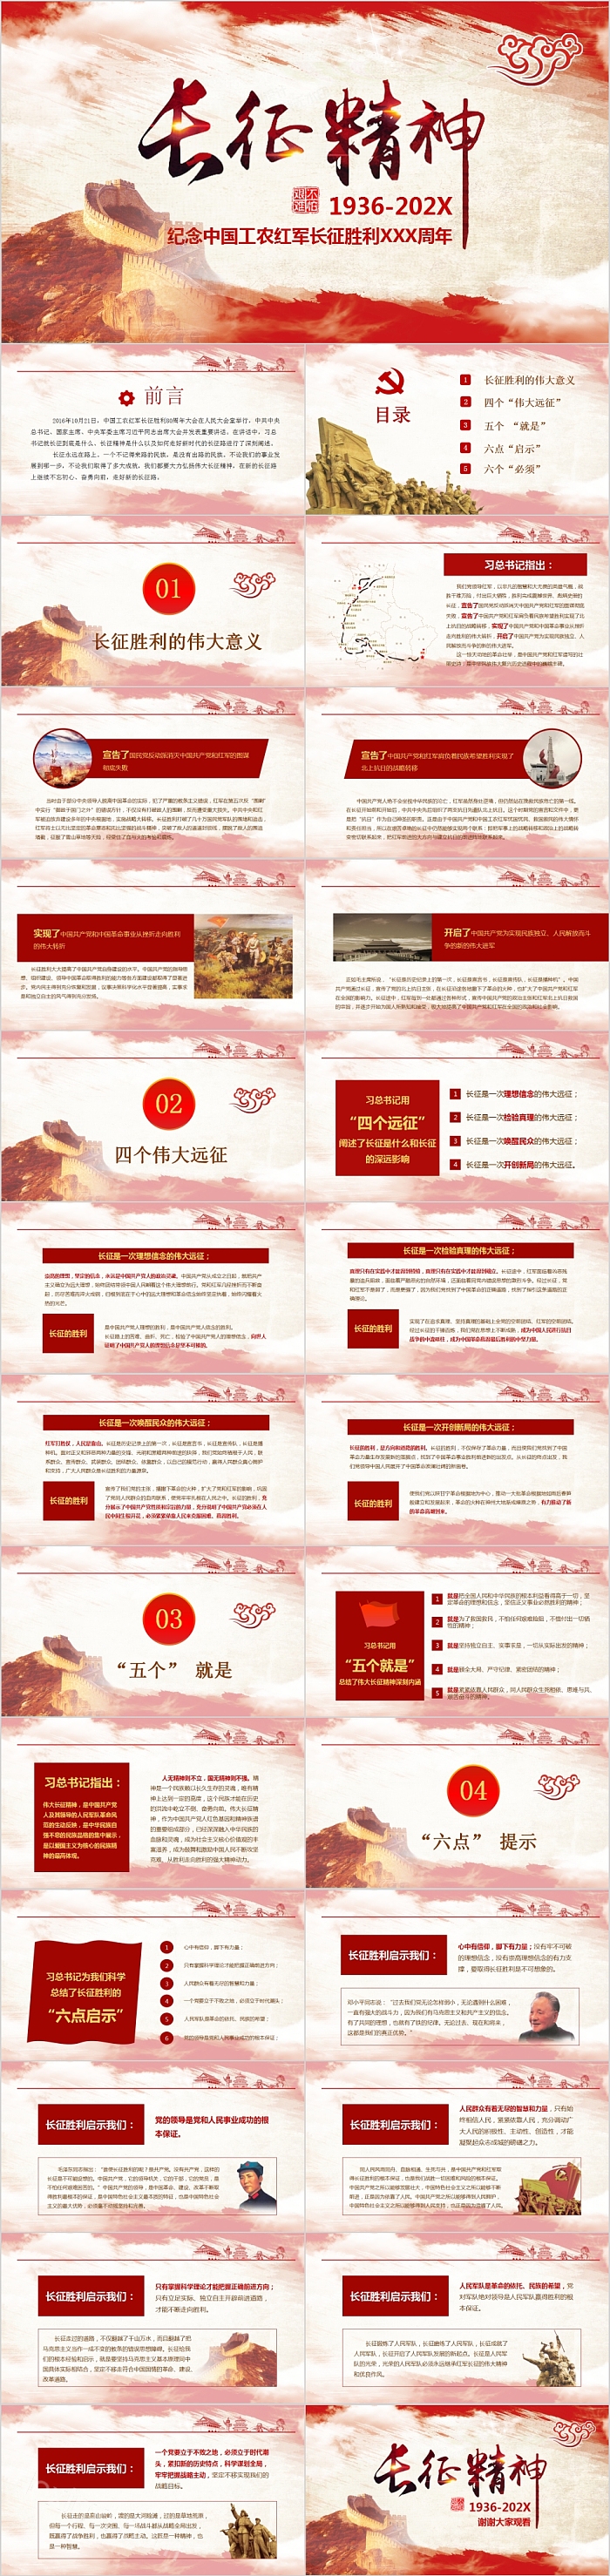 长征精神教育纪念中国工农红军长征胜利XXX周年模板